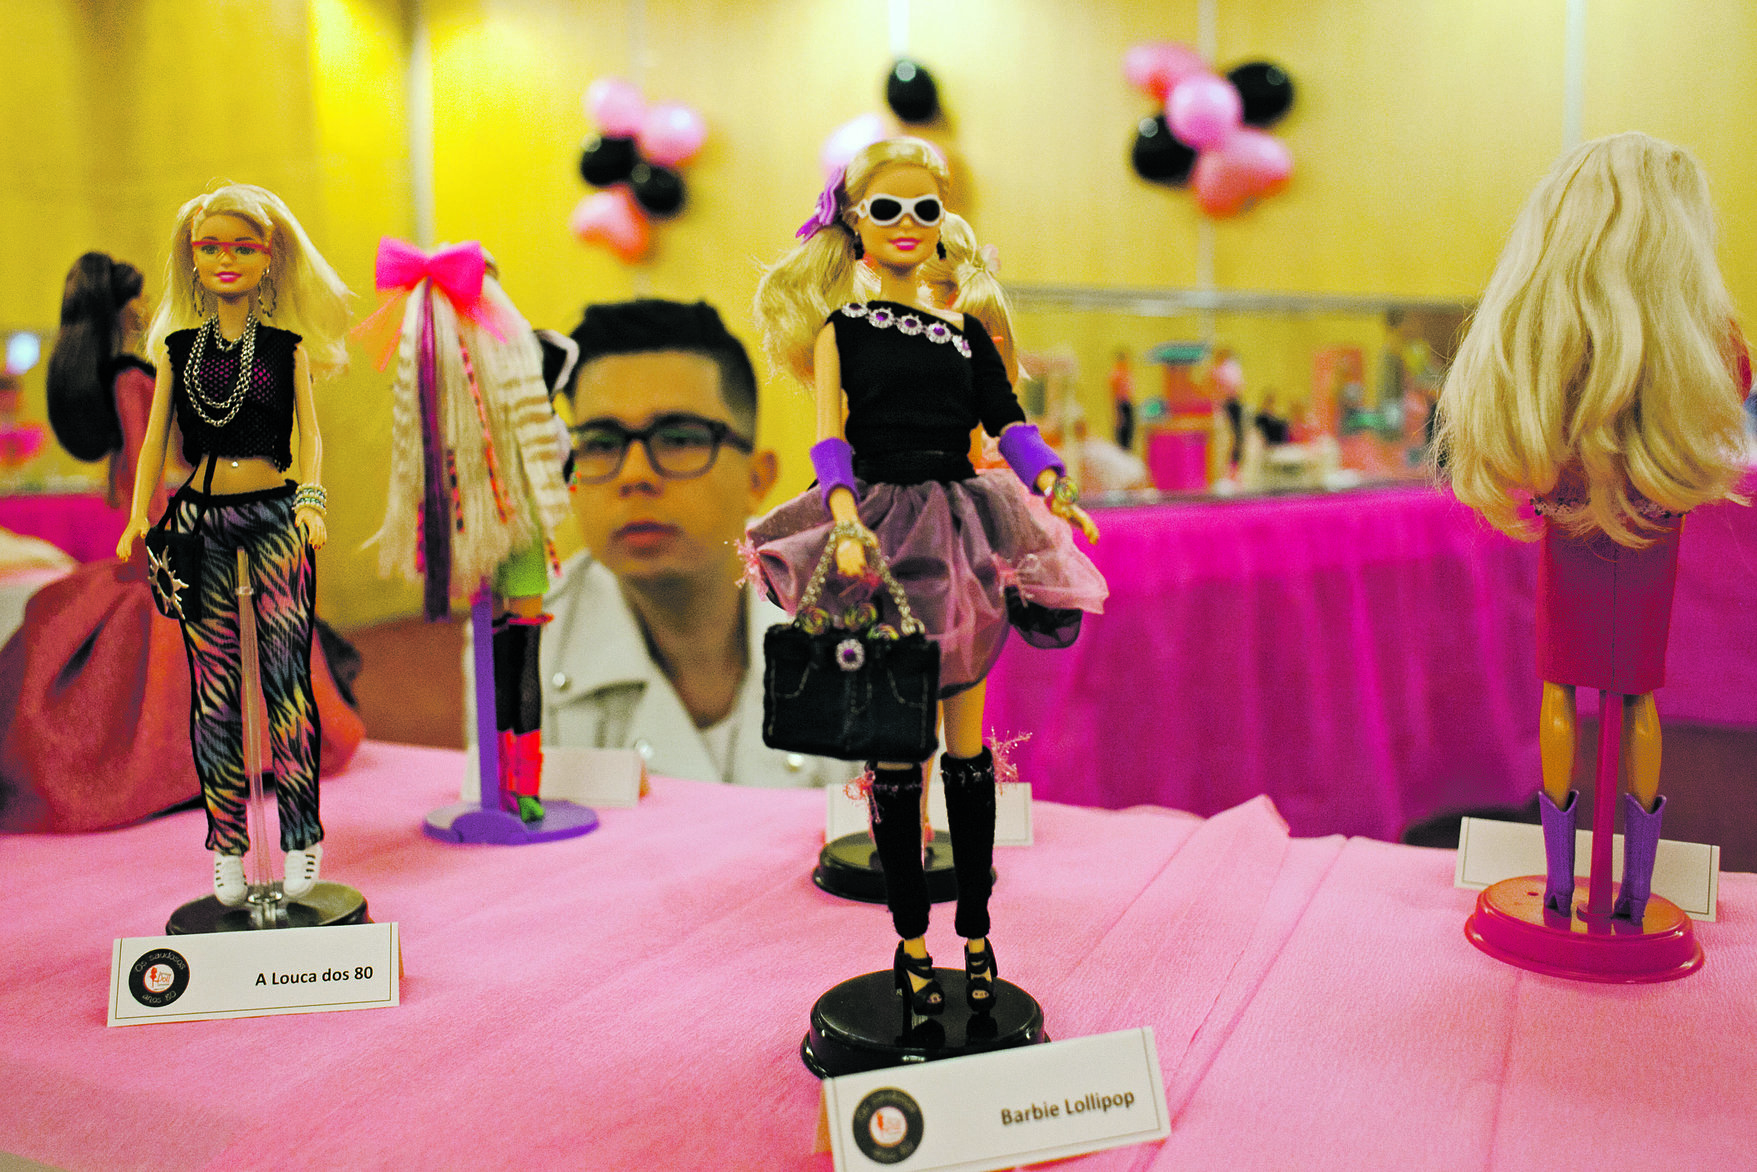 Barbies. Virámos a boneca e entrámos na convenção mais cor-de-rosa do país